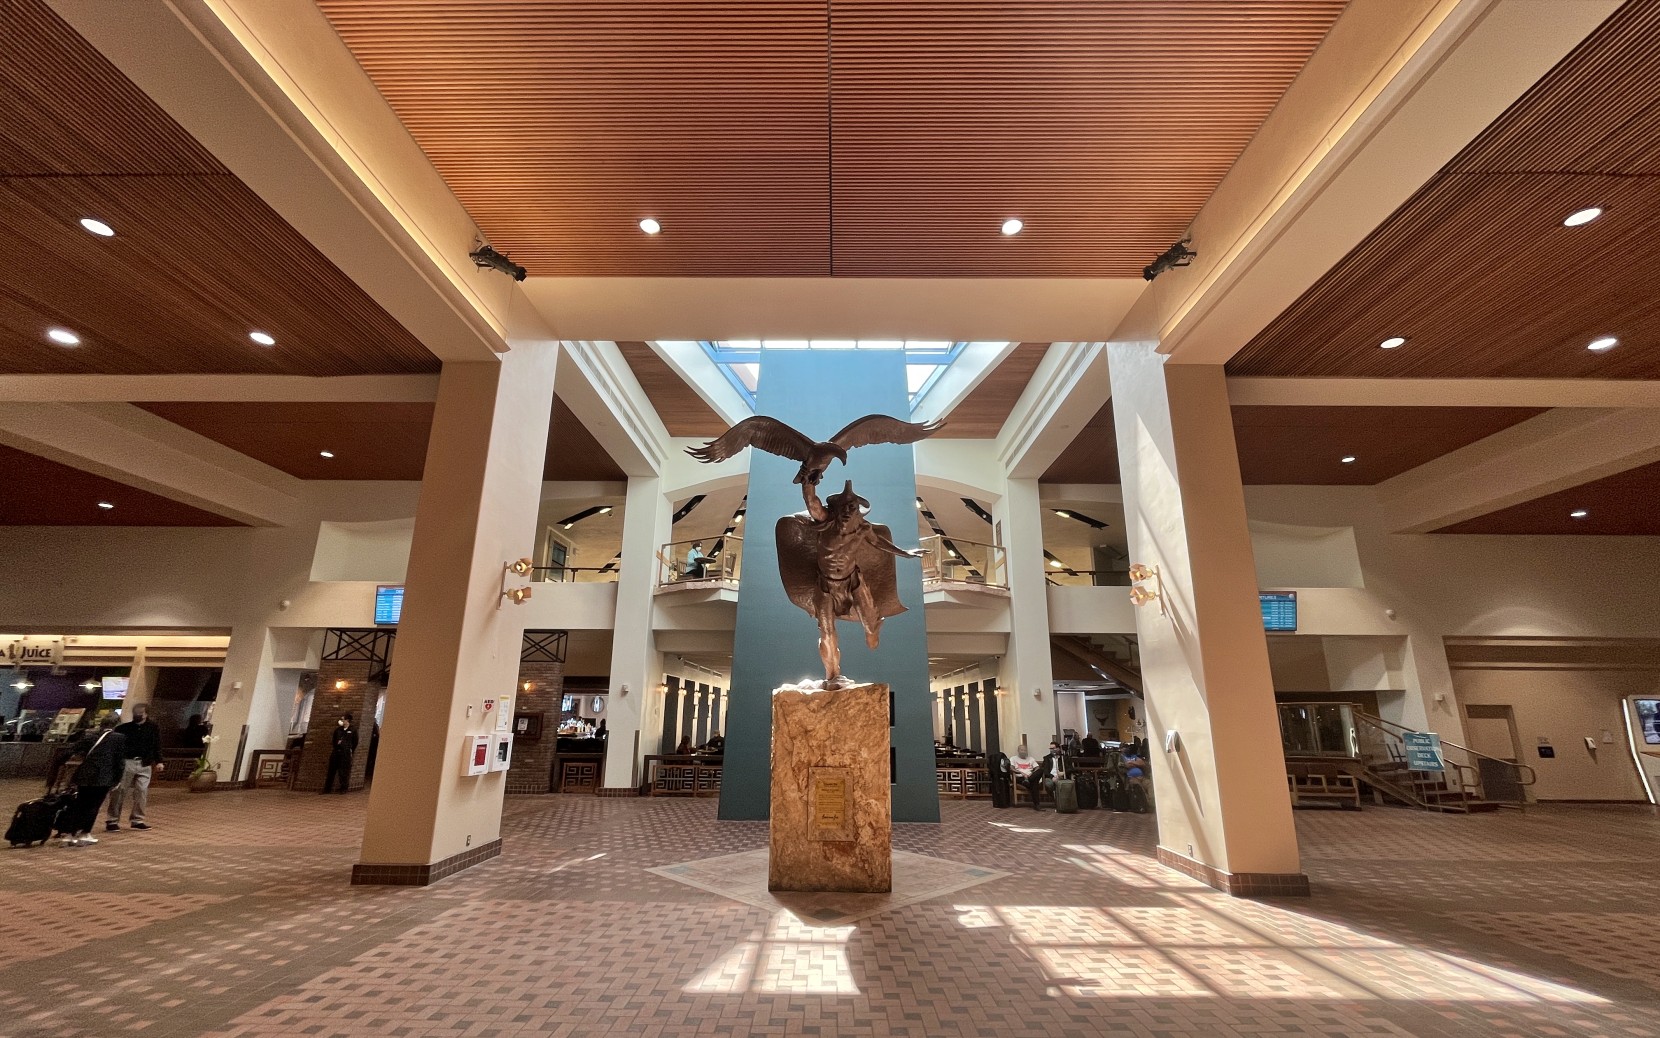 Dream of Flight statue in ABQ  concourse.